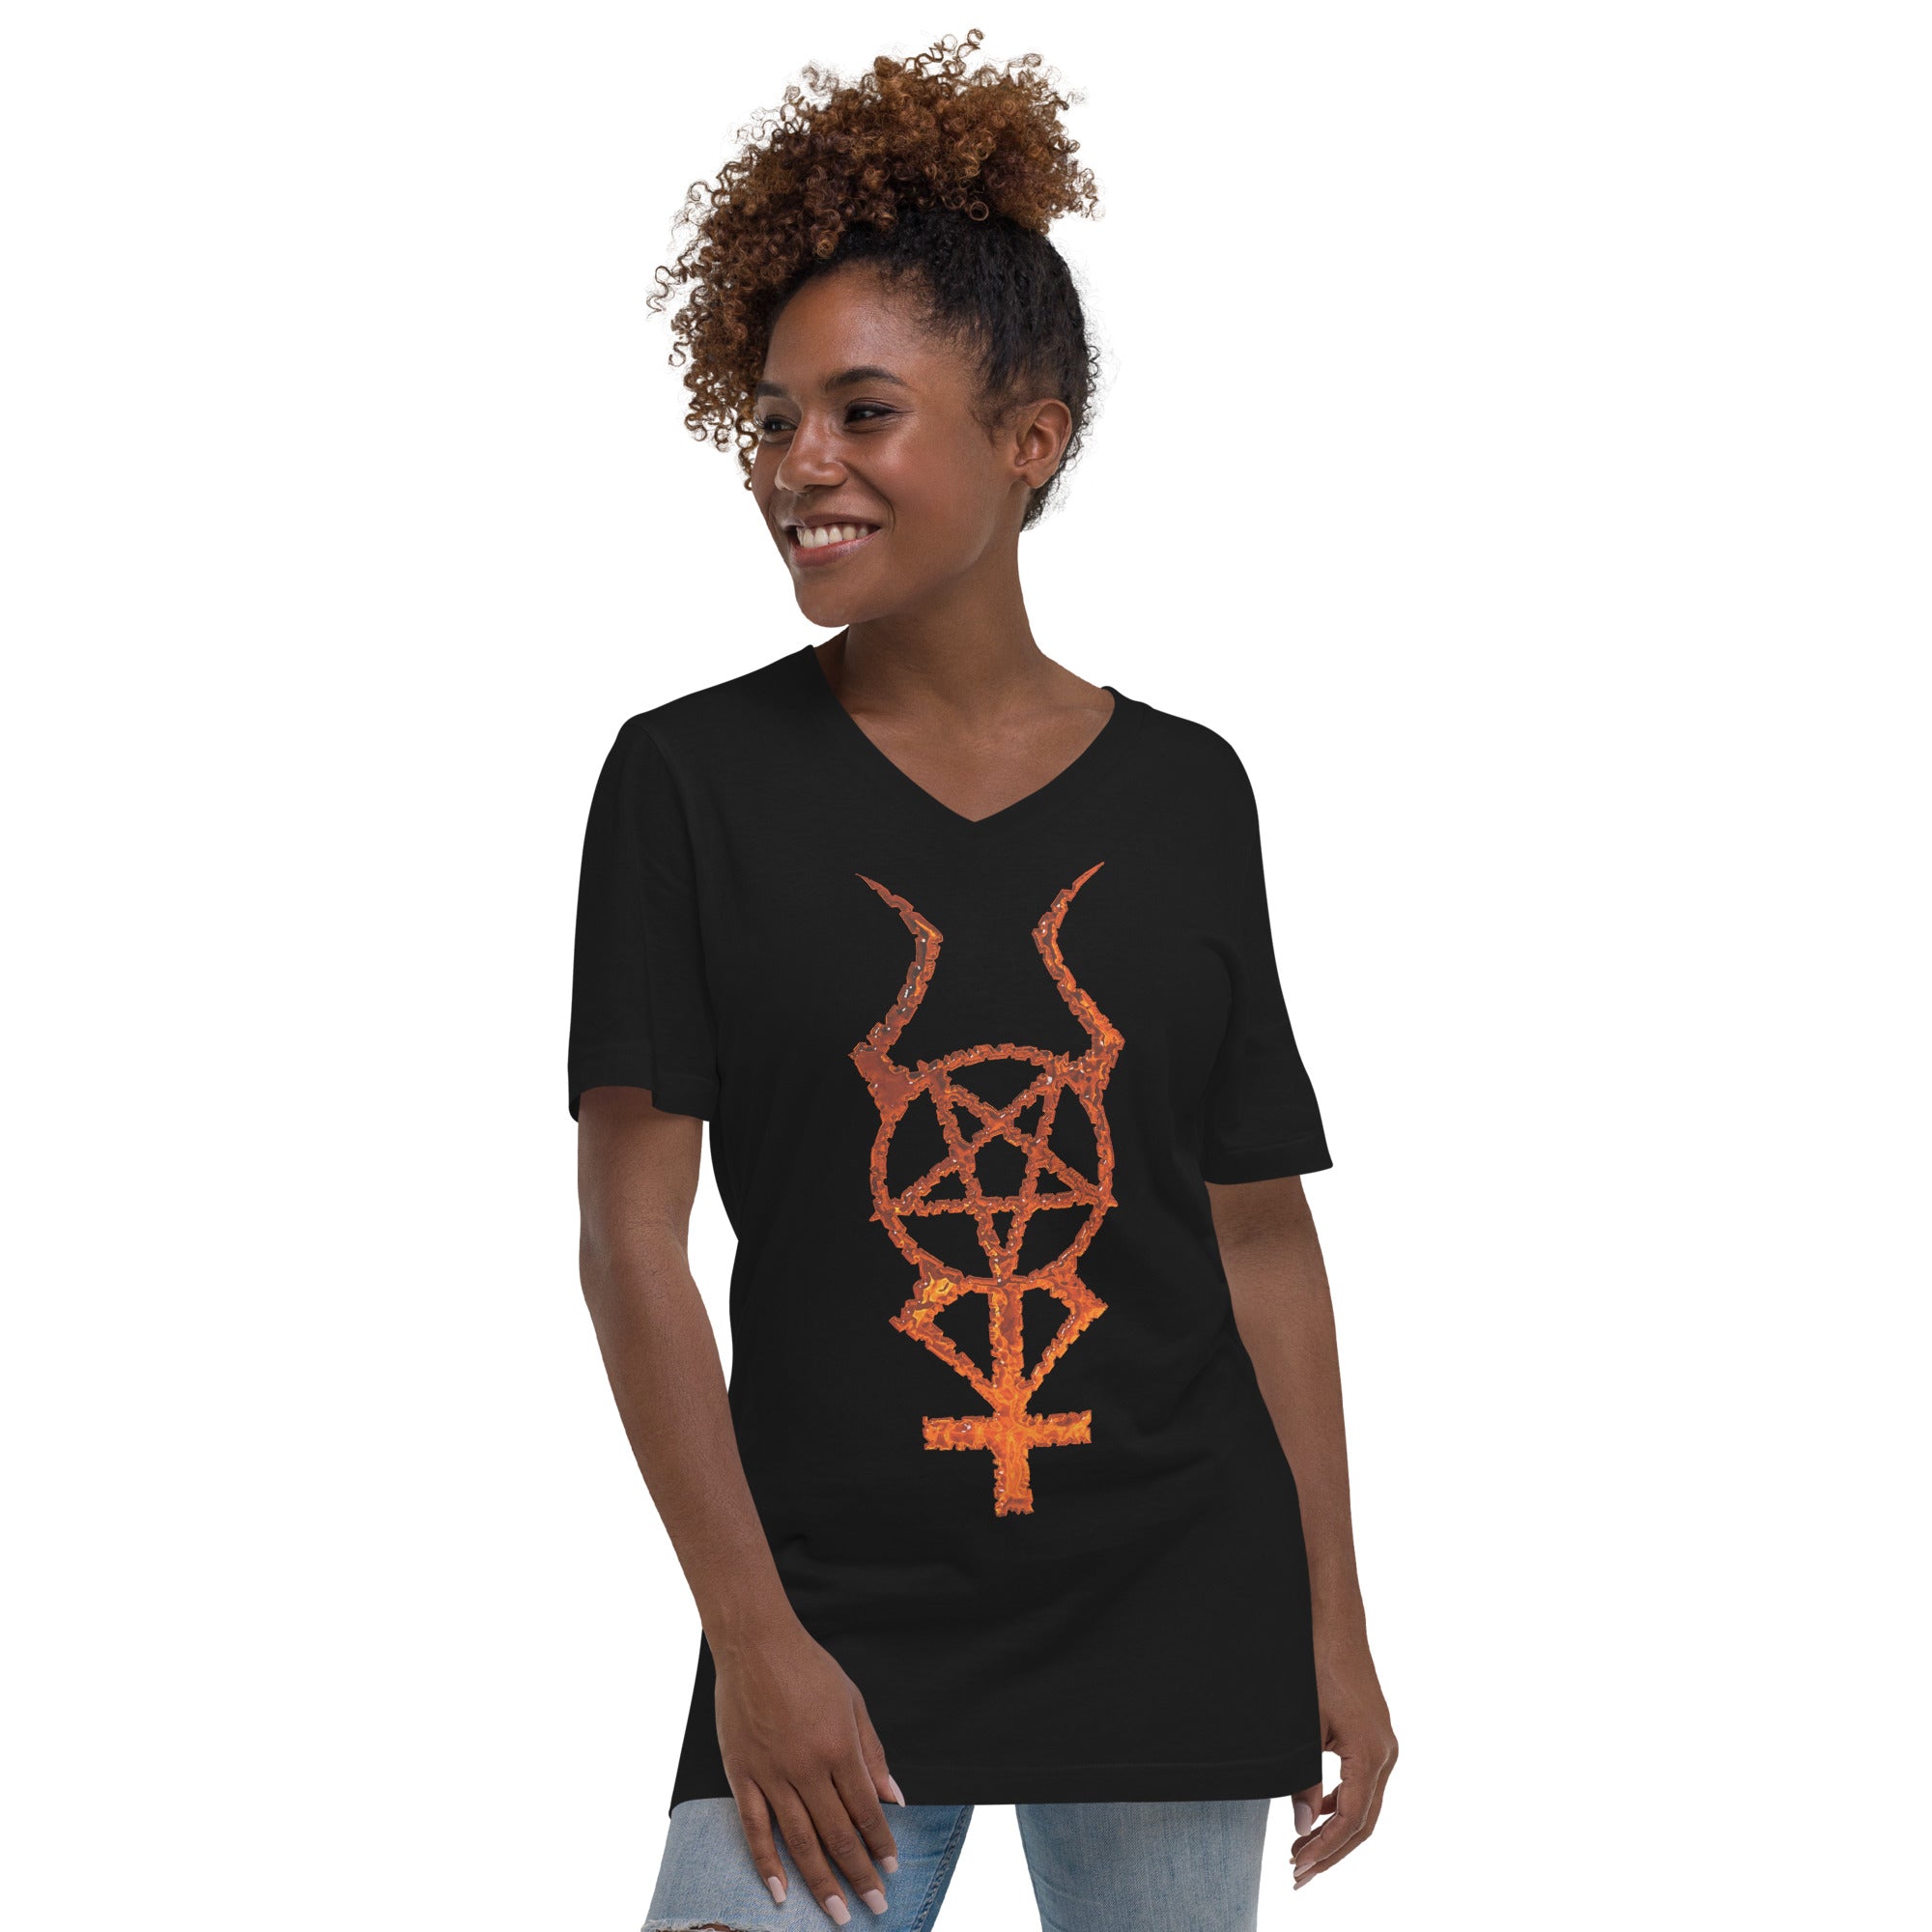 Flame Horned Pentacross Pentagram Cross Women’s Short Sleeve V-Neck T-Shirt - Edge of Life Designs